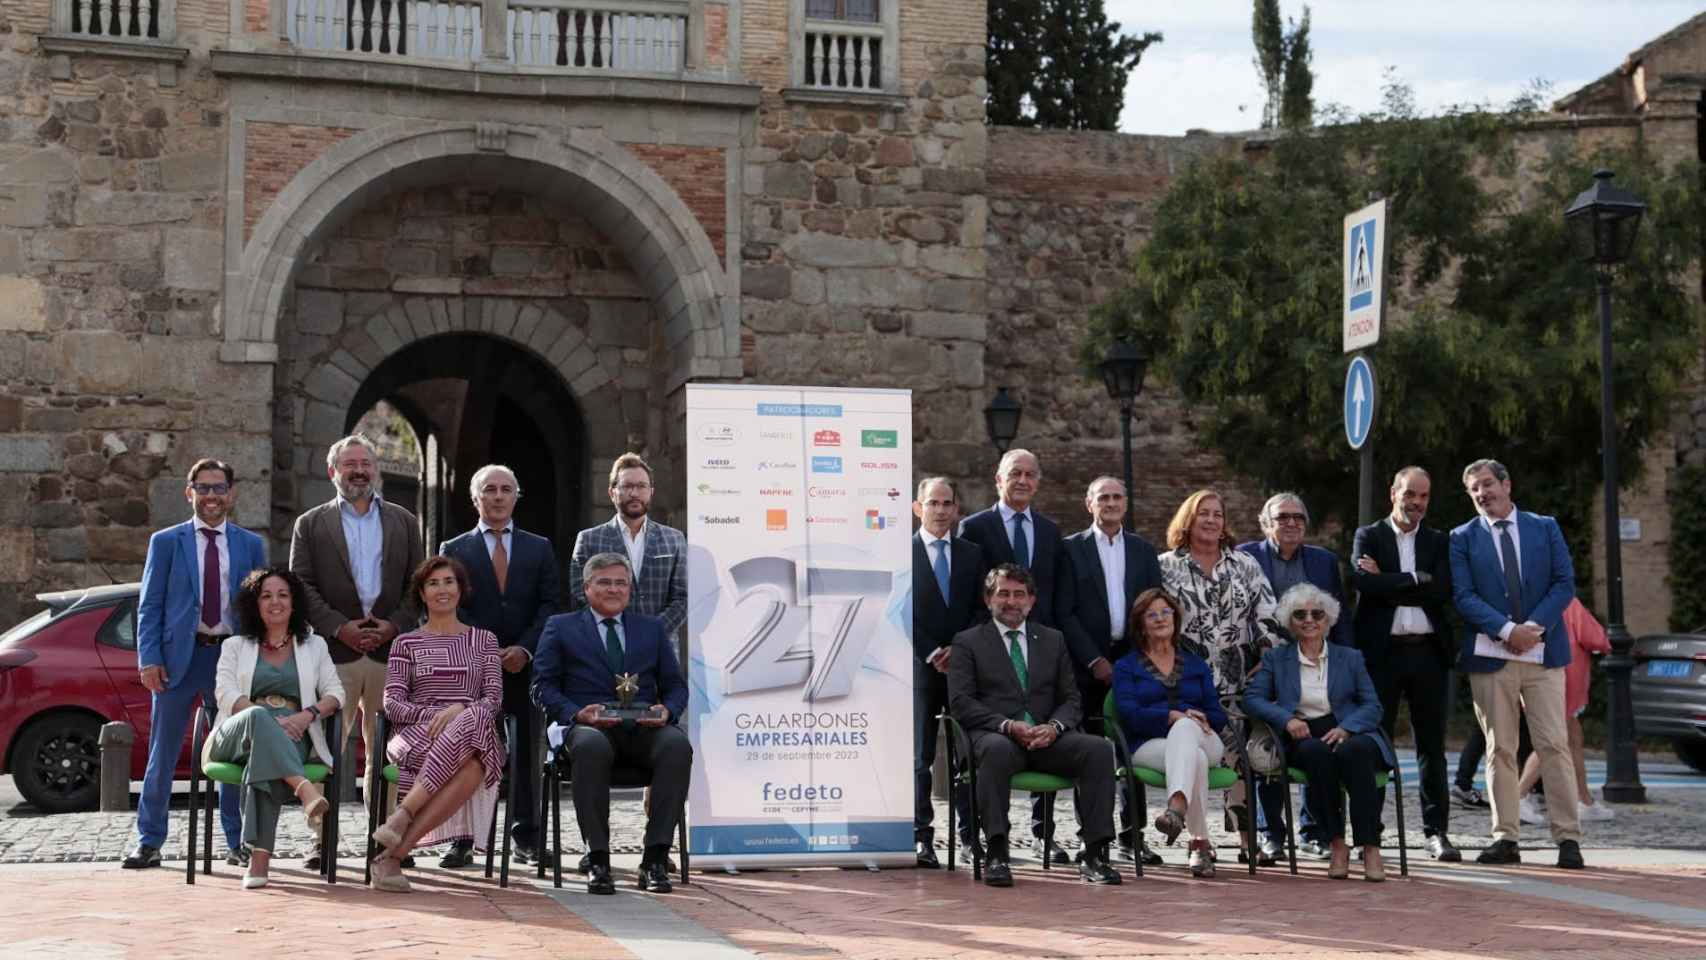 Foto de familia en la presentación de los 27 Galardones Empresariales de Fedeto. Imagen: Javier Longobardo